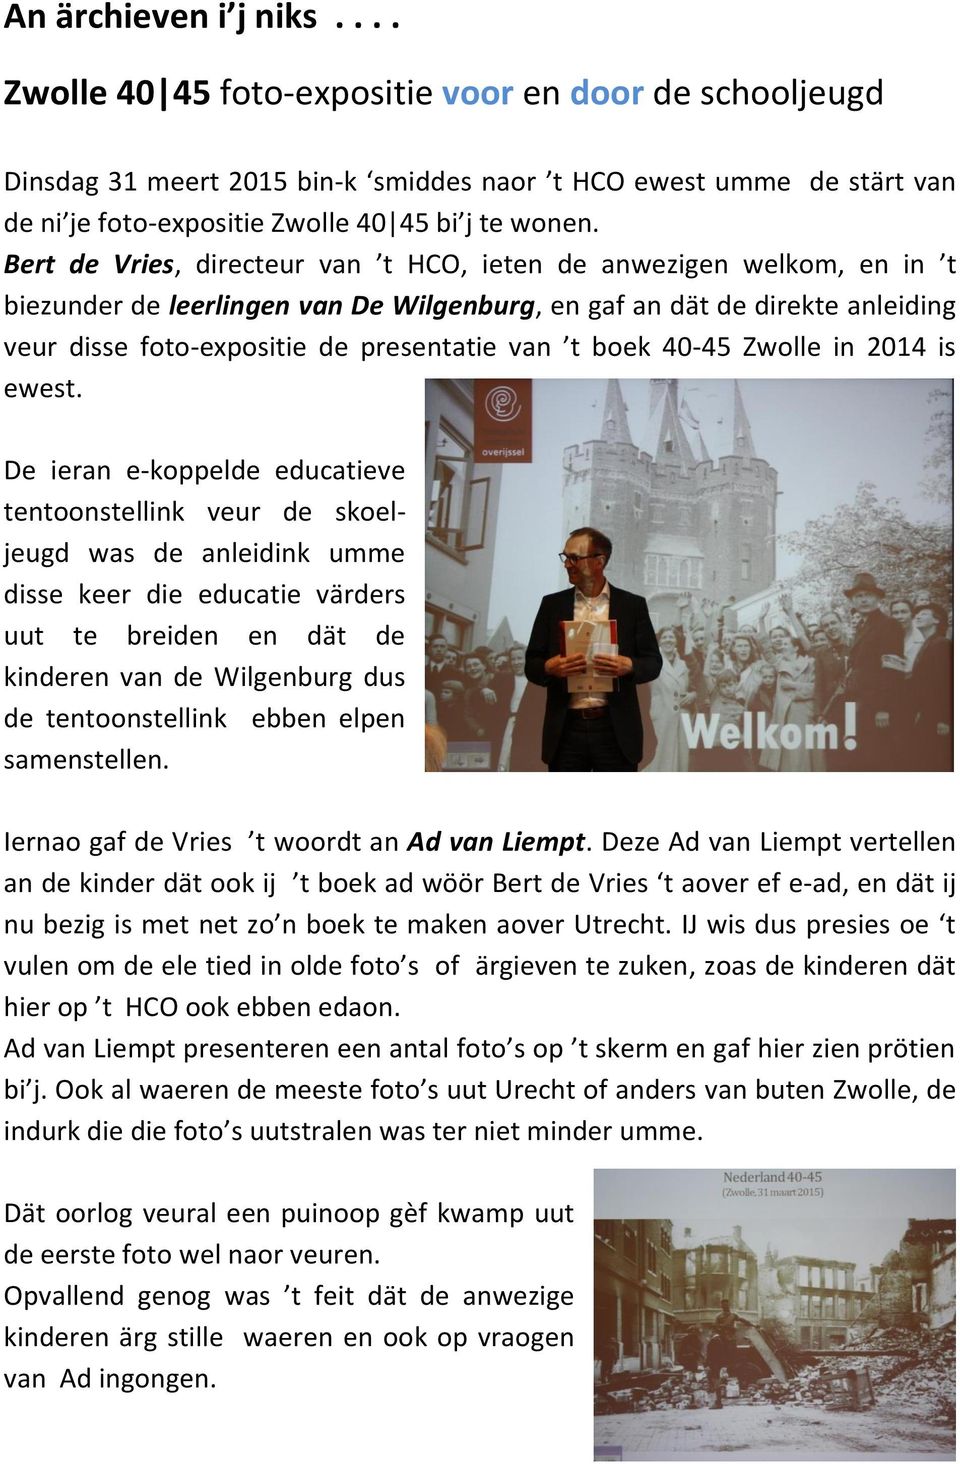 Bert de Vries, directeur van t HCO, ieten de anwezigen welkom, en in t biezunder de leerlingen van De Wilgenburg, en gaf an dät de direkte anleiding veur disse foto-expositie de presentatie van t